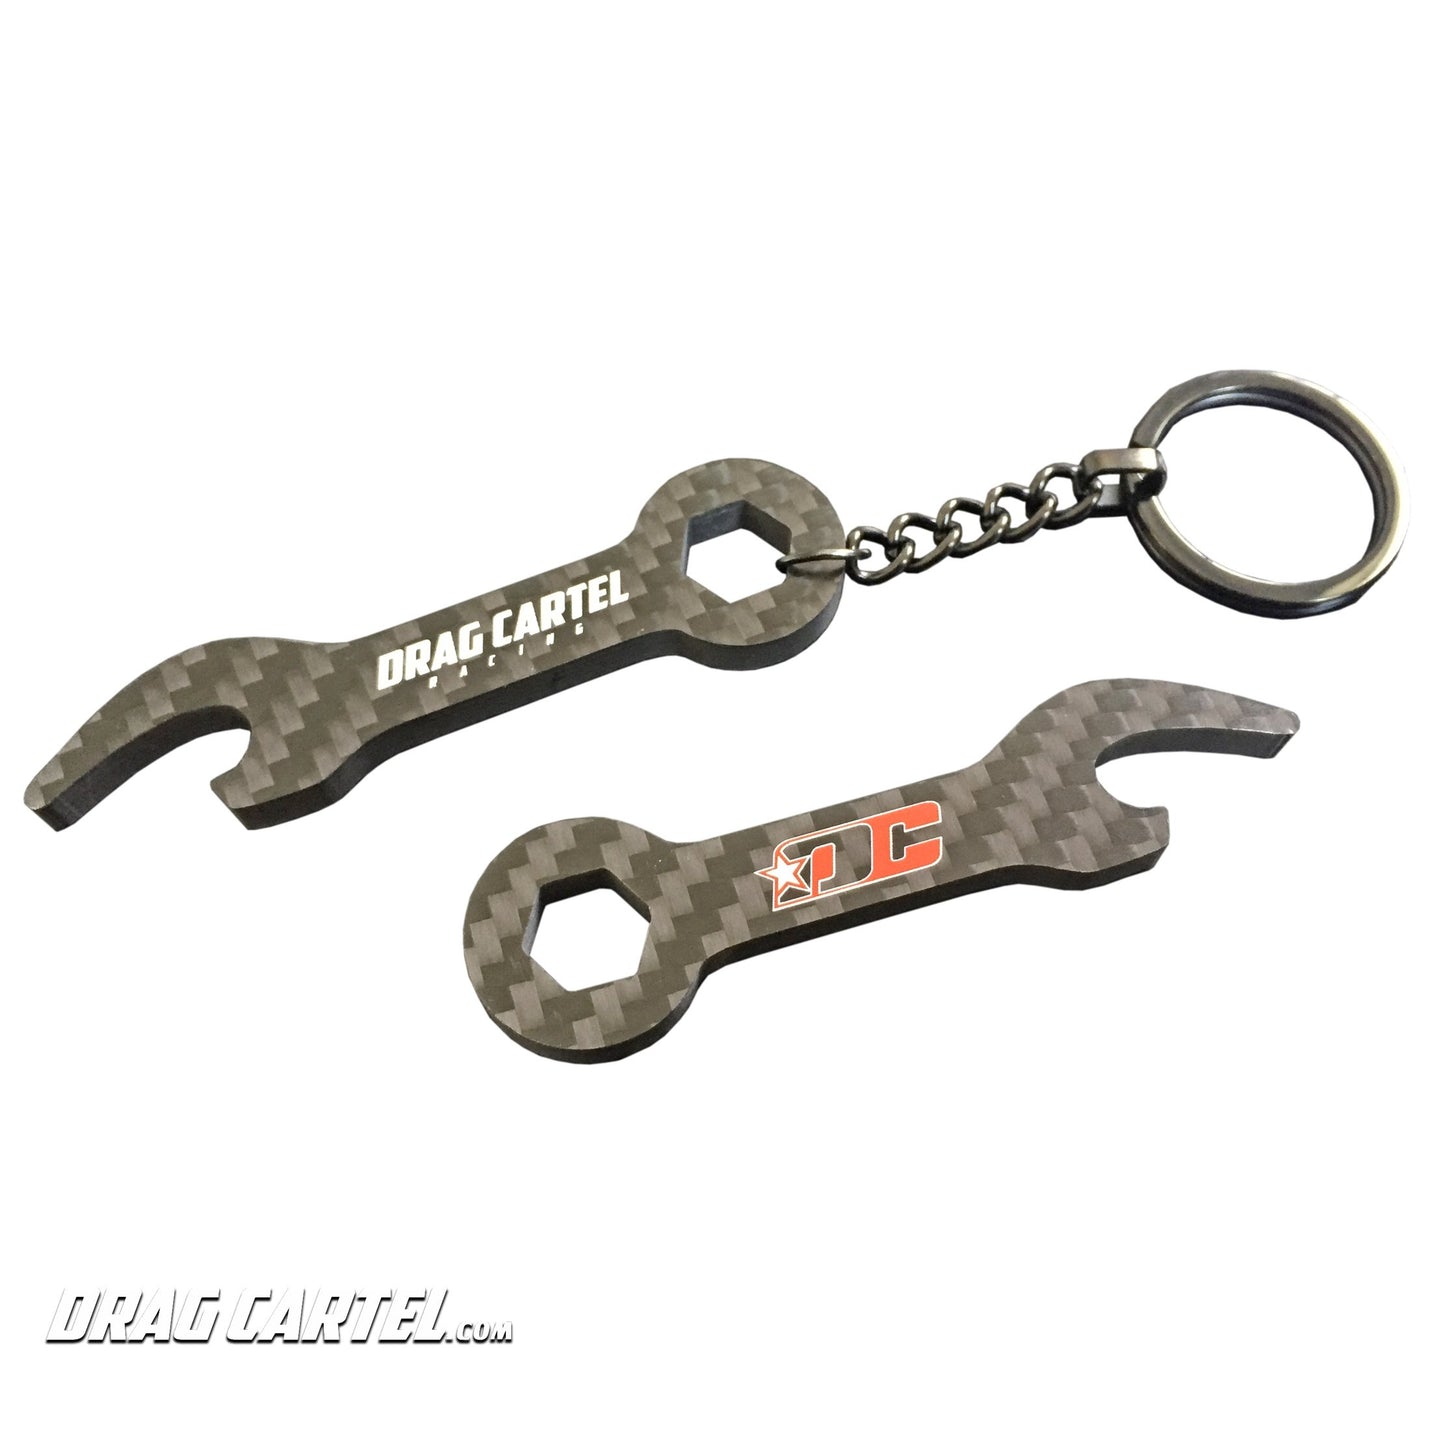 Drag Cartel - Themed Carbon Fiber Key Chain Wrench / Bottle Opener